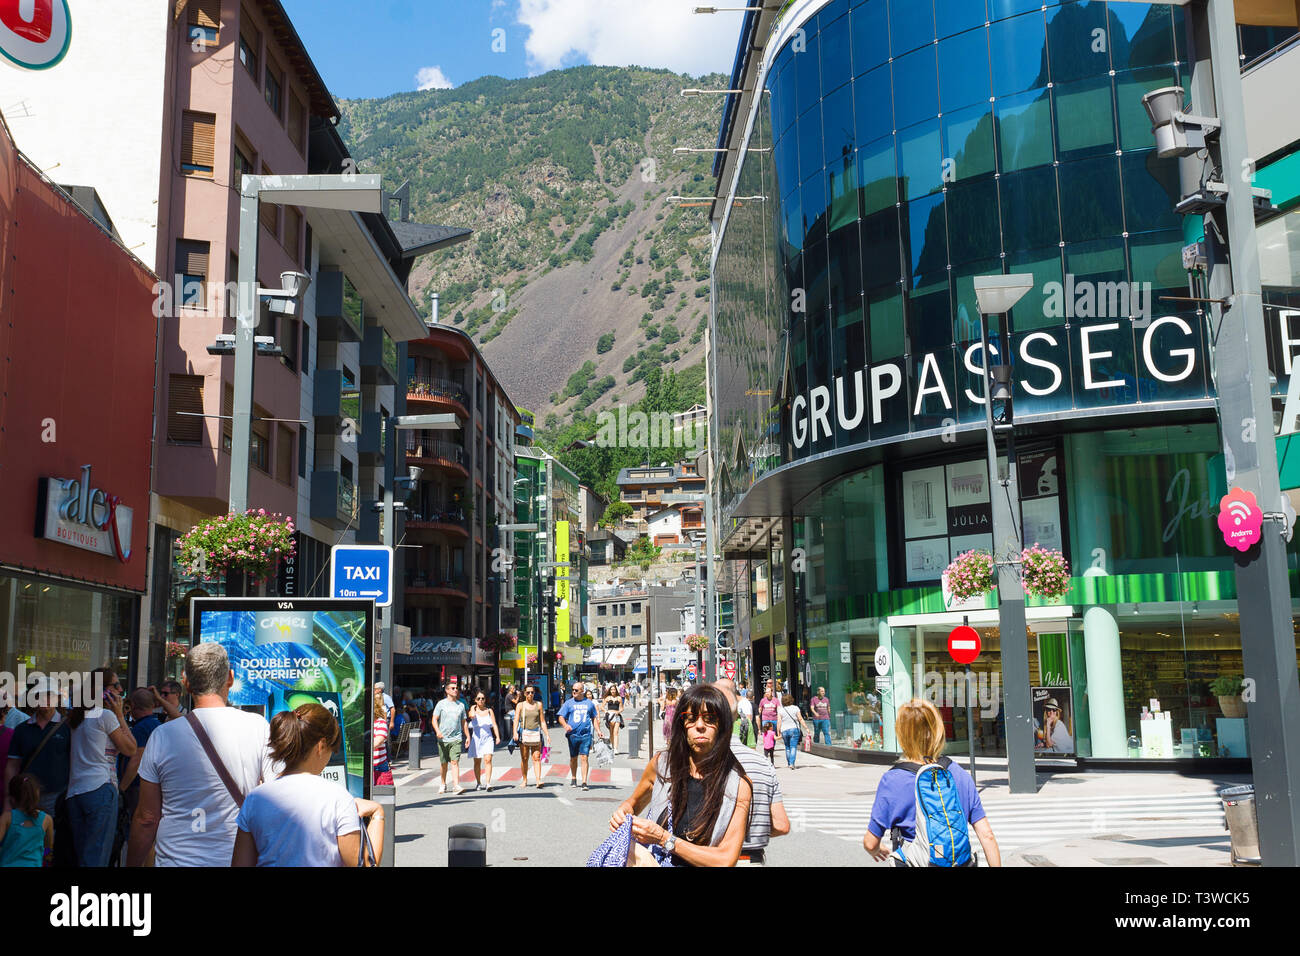 Andorra la Vella, Andorra - 14 agosto 2017: Andorra è il paese con il più piccolo commercio imposte. Si tratta di un albergo turistico e centro commerciale d'Europa. Foto Stock